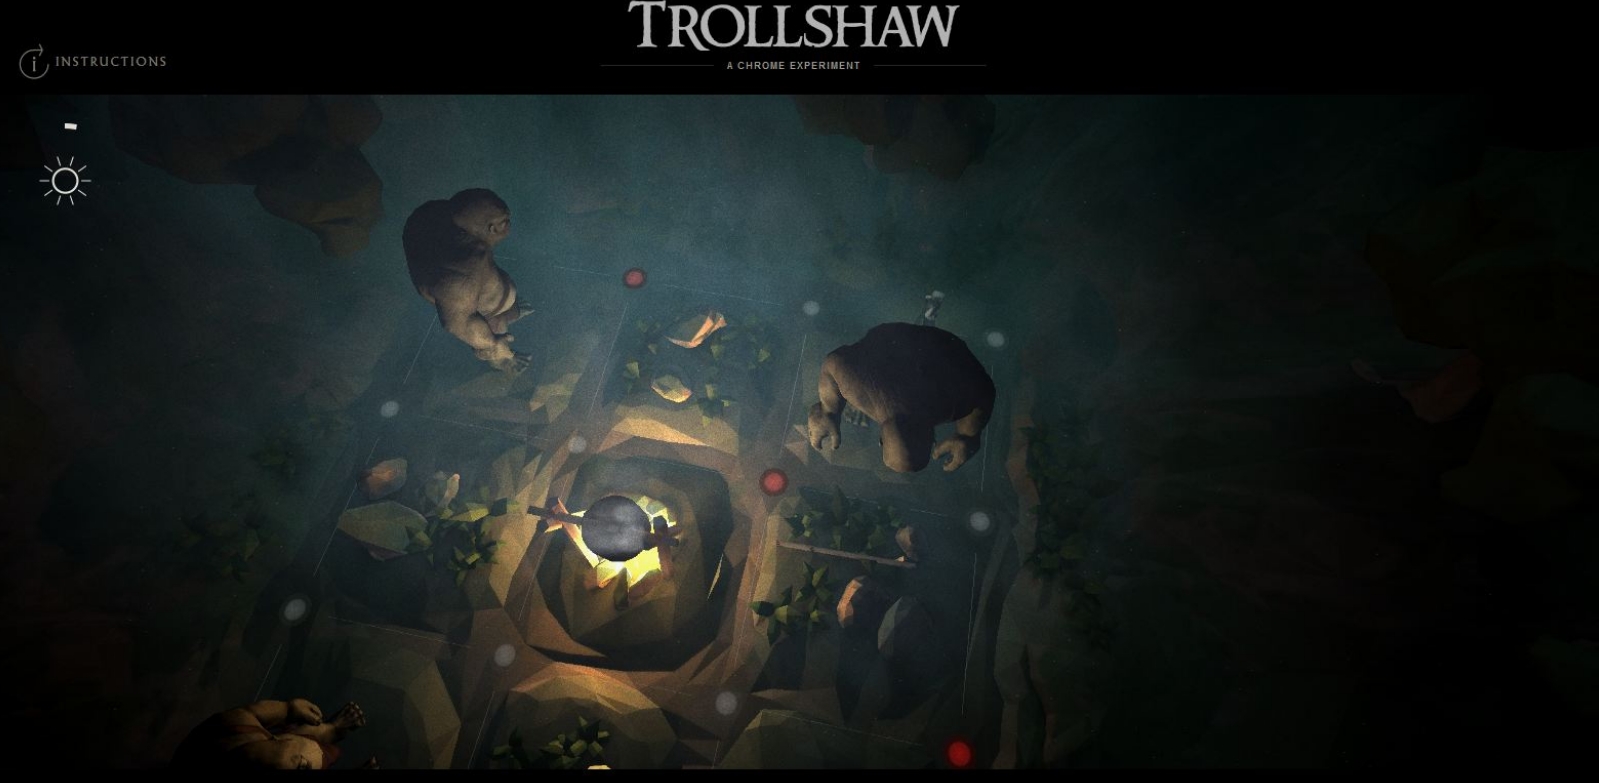 The Hobbit: The Desolation Of Smaug Google Chrome Experiment Trollshaw Image